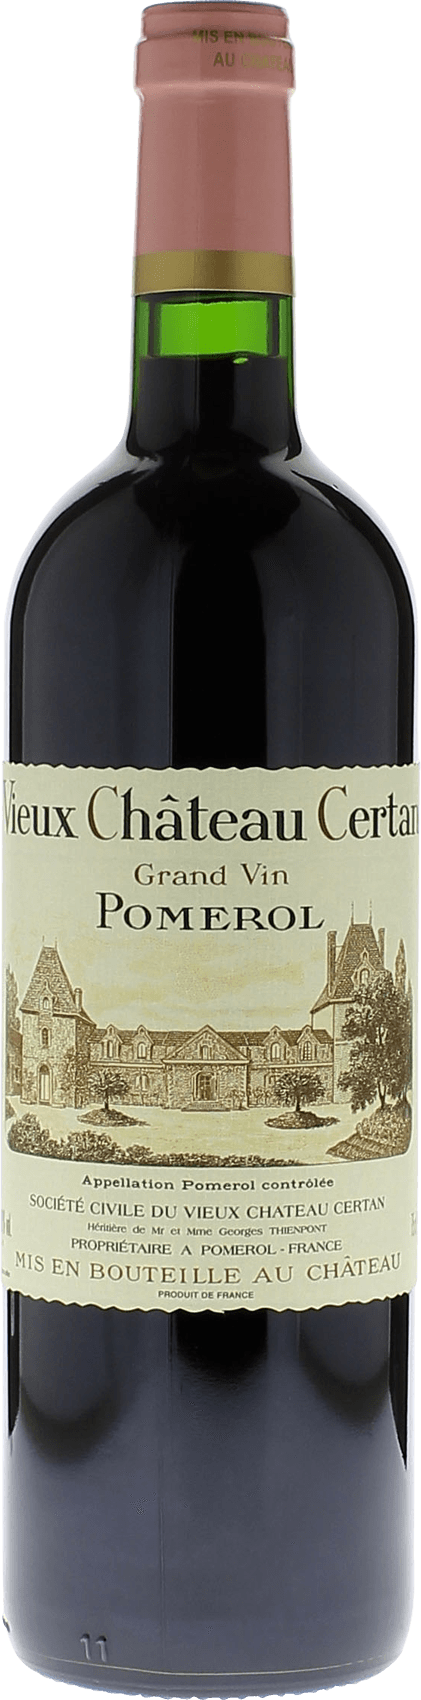 Vieux chteau  certan 2015  Pomerol, Bordeaux rouge